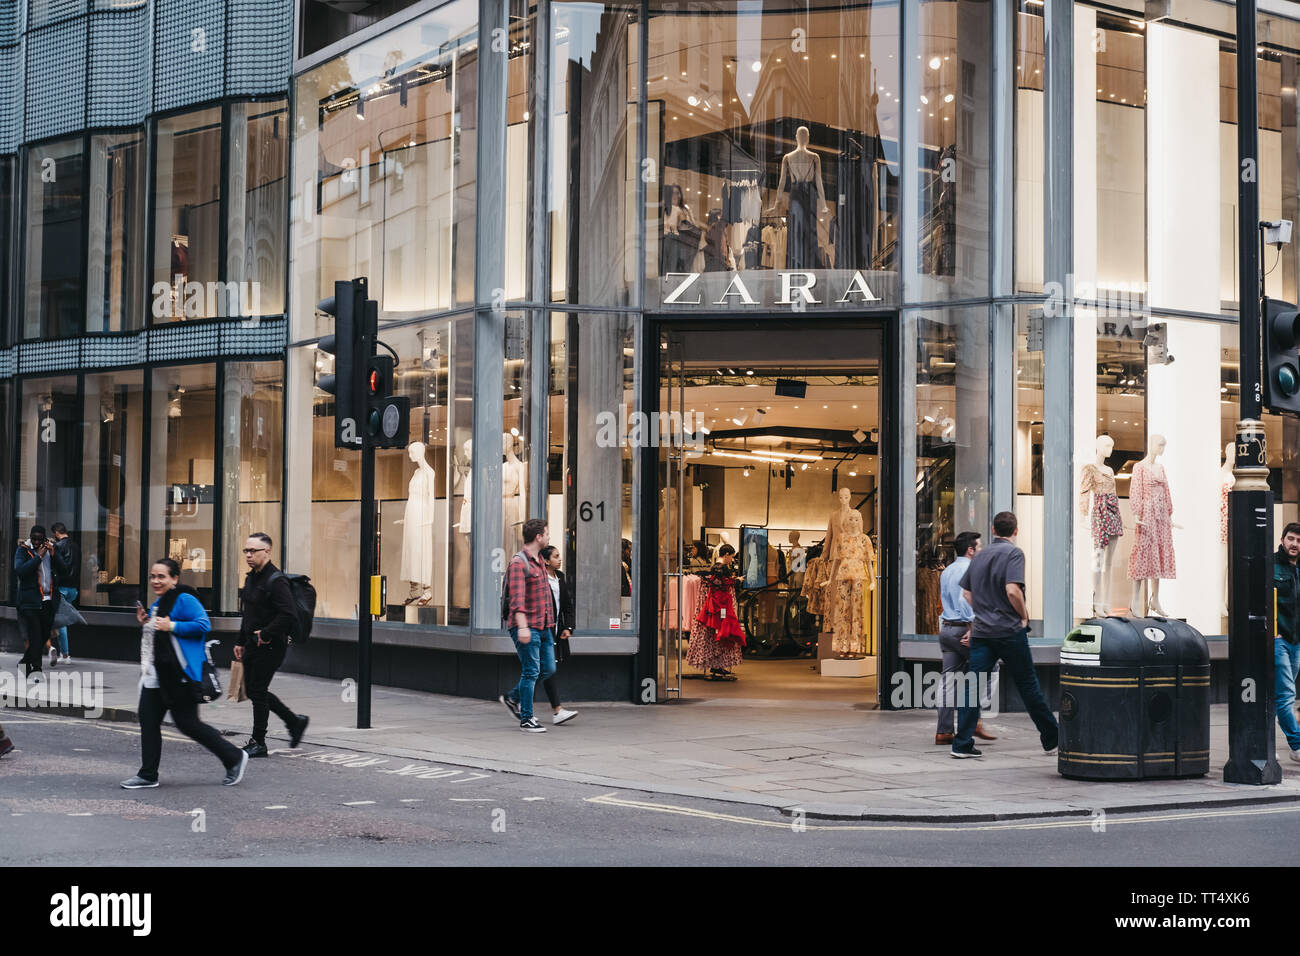 Londres, Royaume-Uni - juin 5, 2019 : en face de Zara magasin sur Oxford  Street, Londres. Oxford Street est un des plus célèbres rues commerçantes de  Photo Stock - Alamy